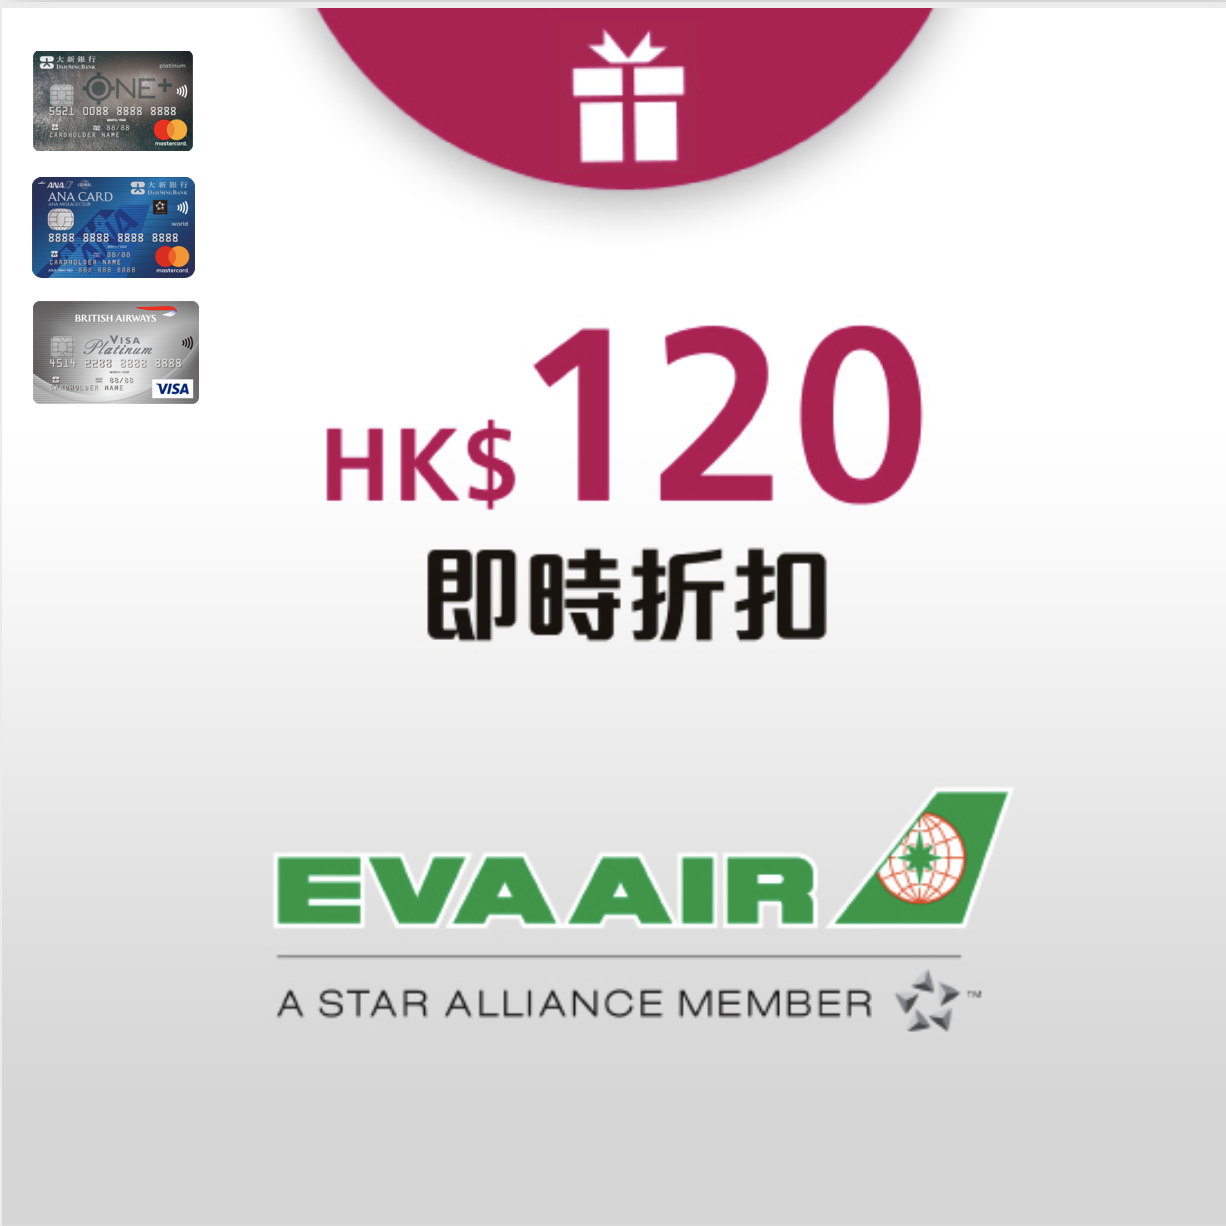 大新信用卡長榮香港來回台北機票HKD120即時折扣